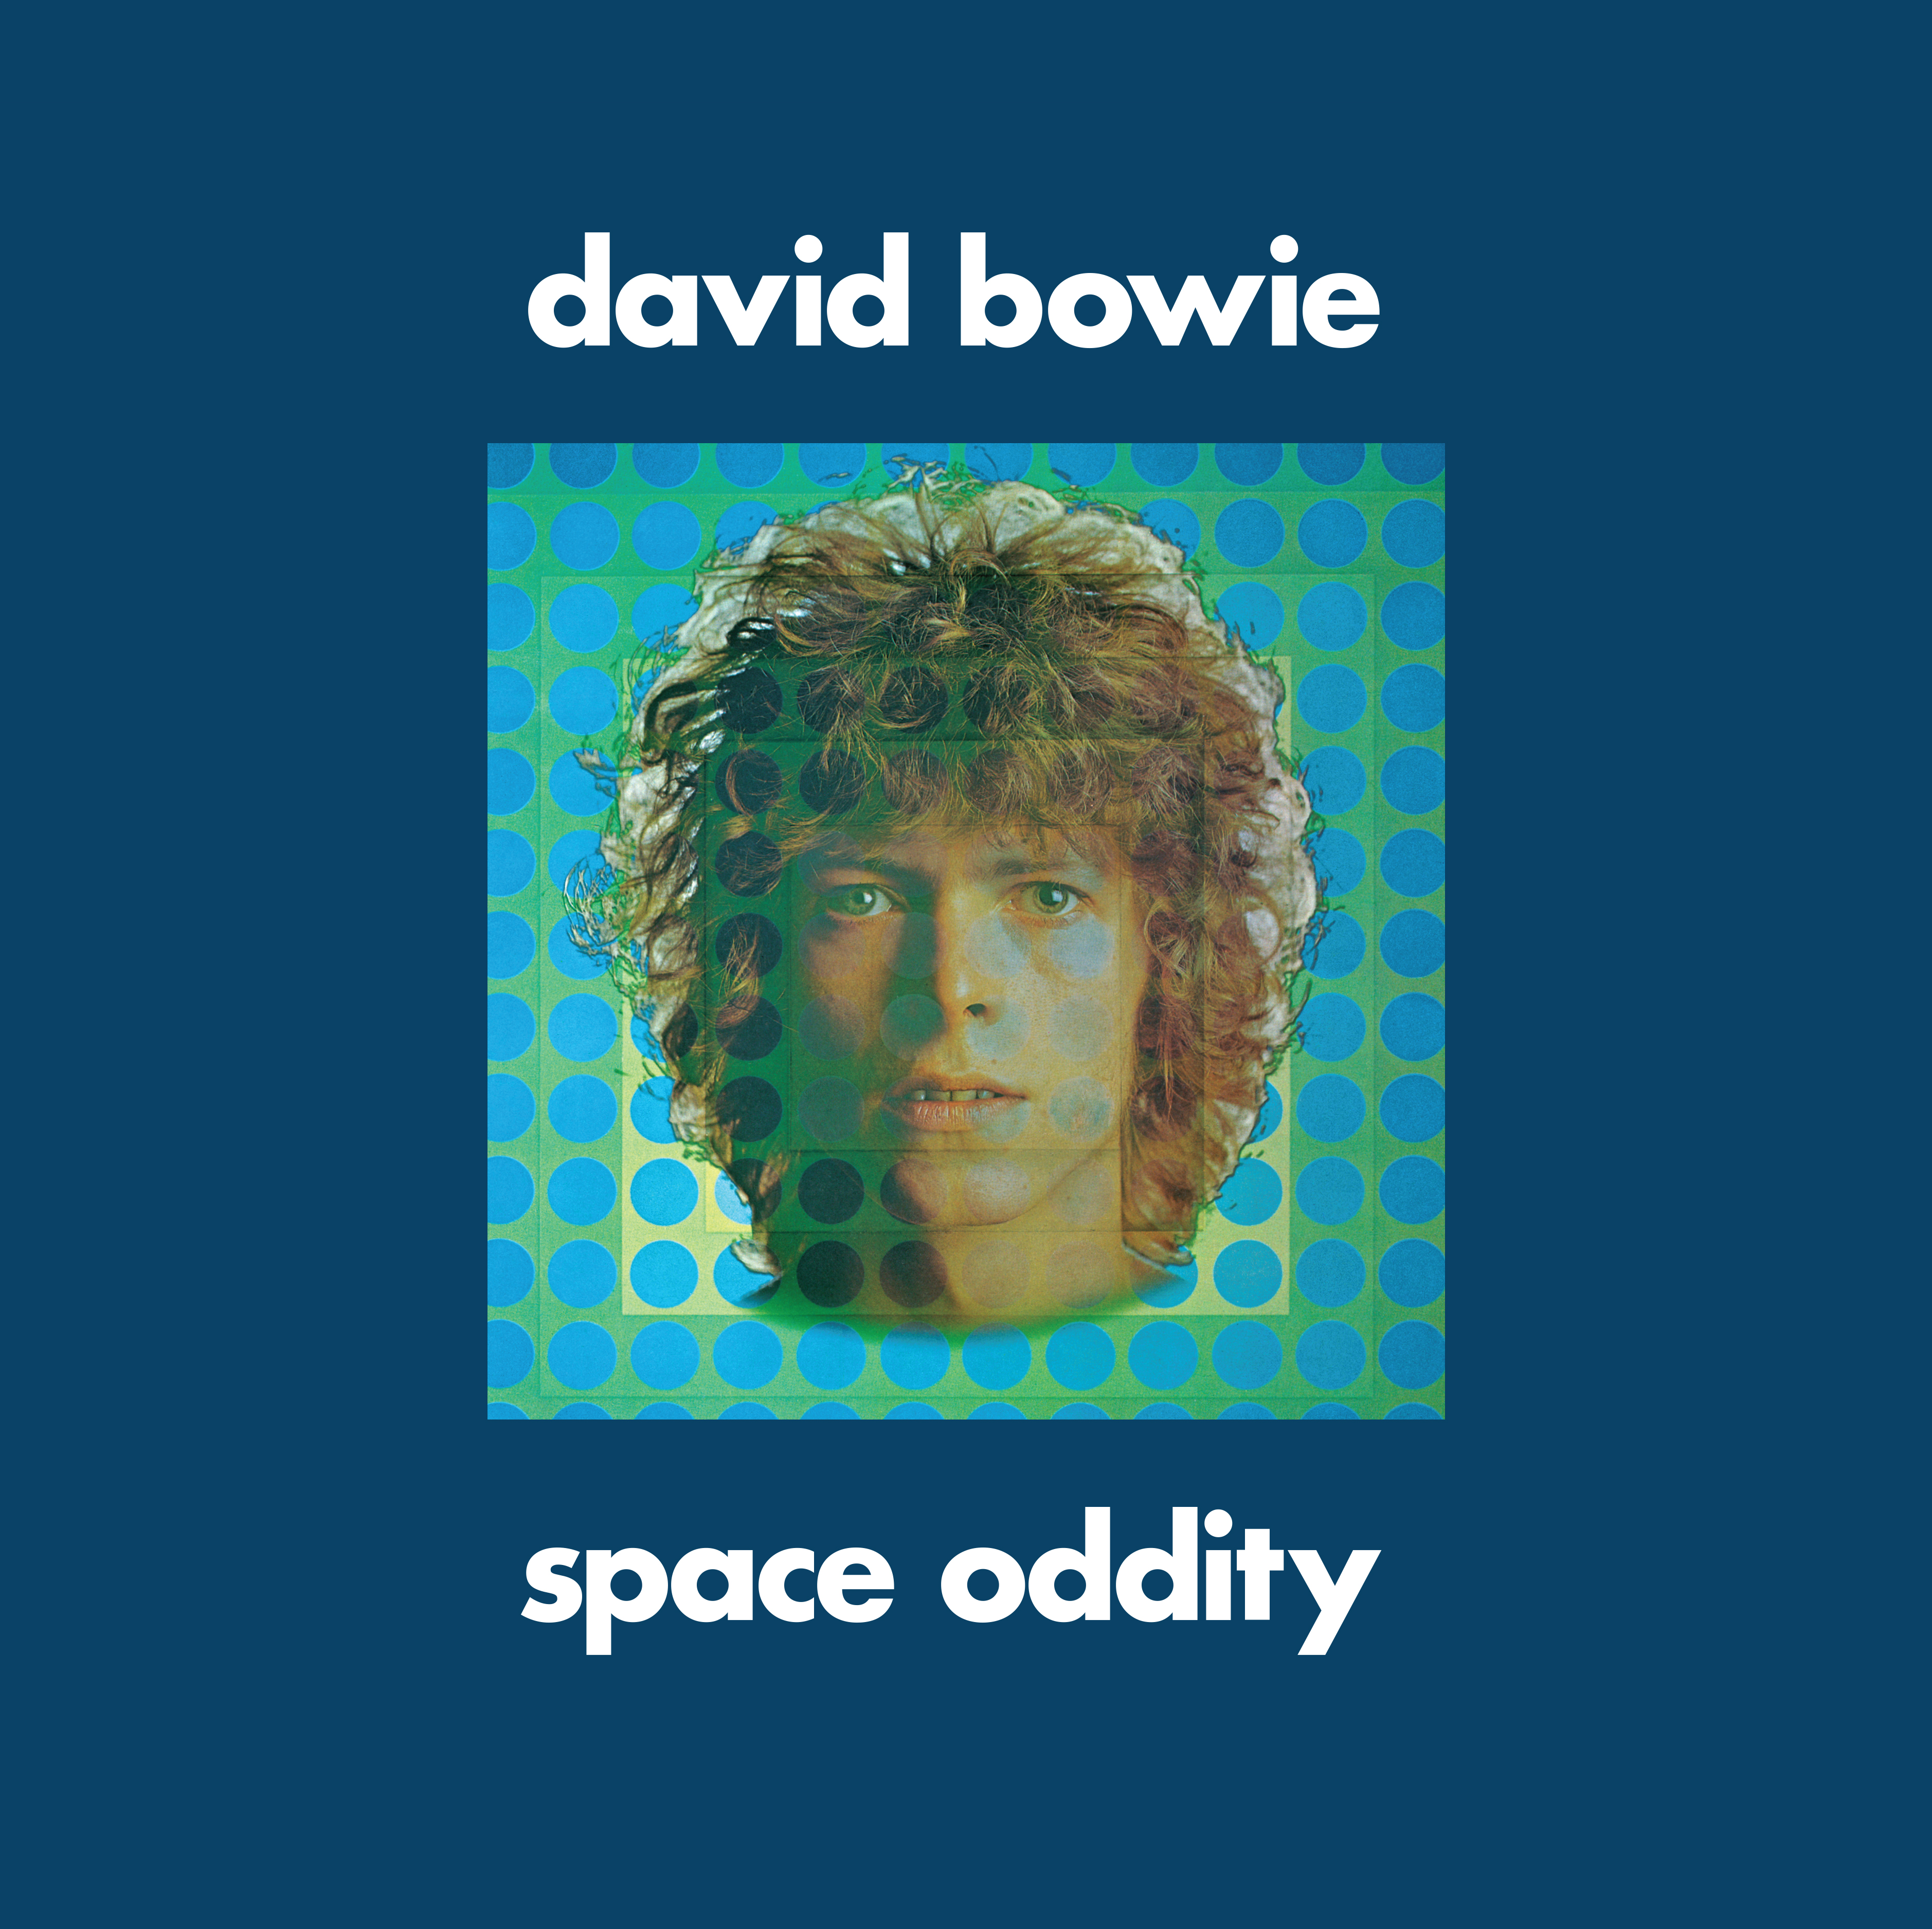 DAVID BOWIE ‘SPACE ODDITY’ 360 REALITY AUDIO